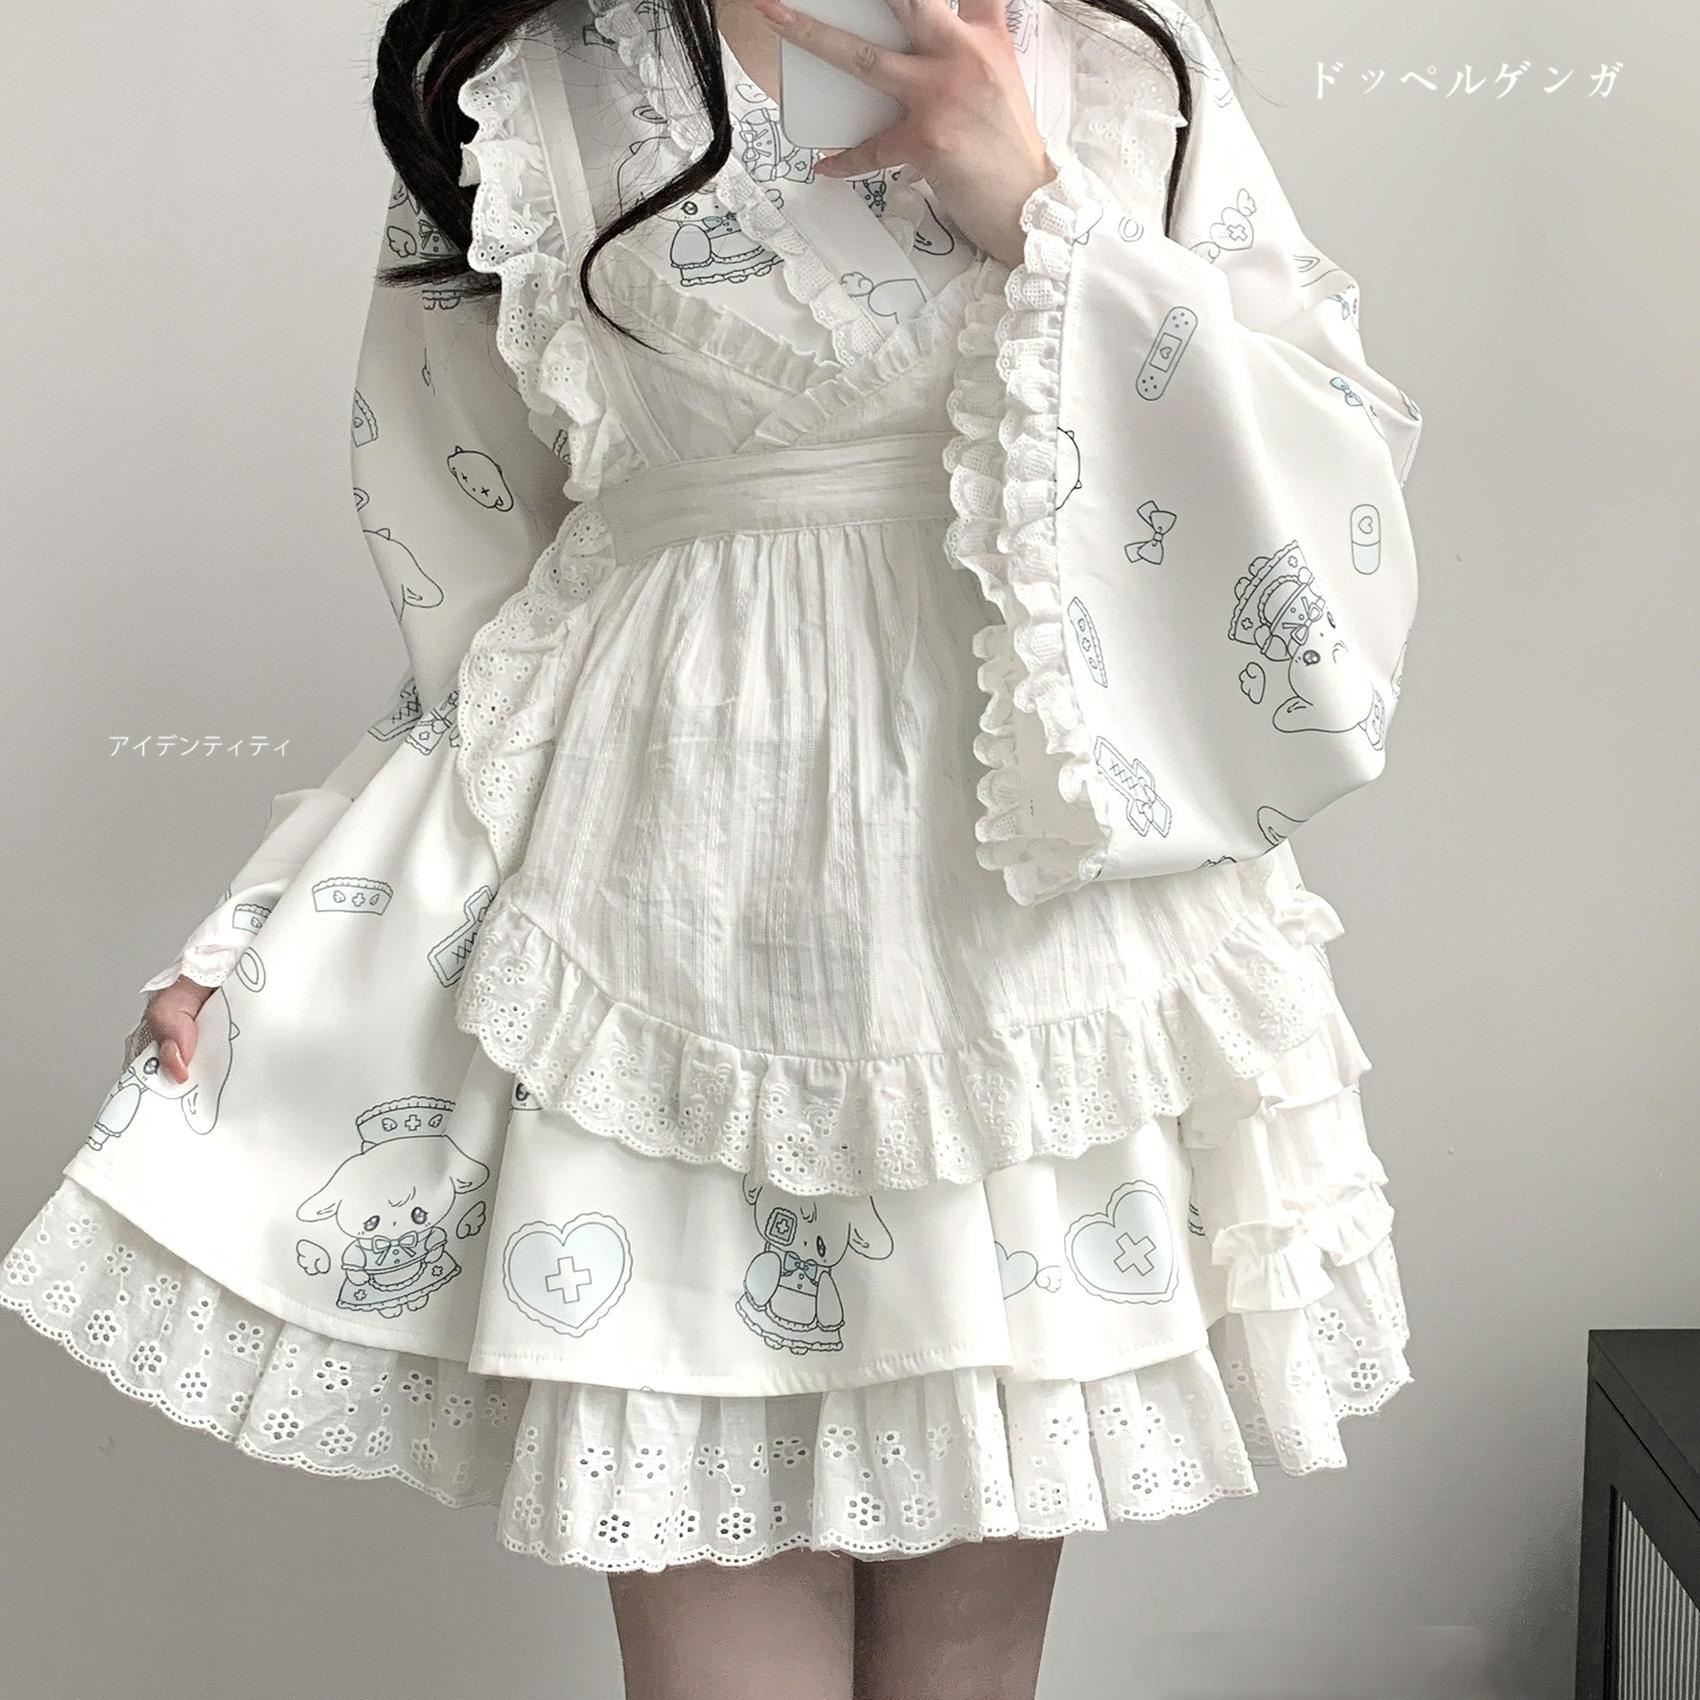 Tenshi Kaiwai Patchwork Skirt Kimono Top White Apron Three-Piece Set 36786:536942